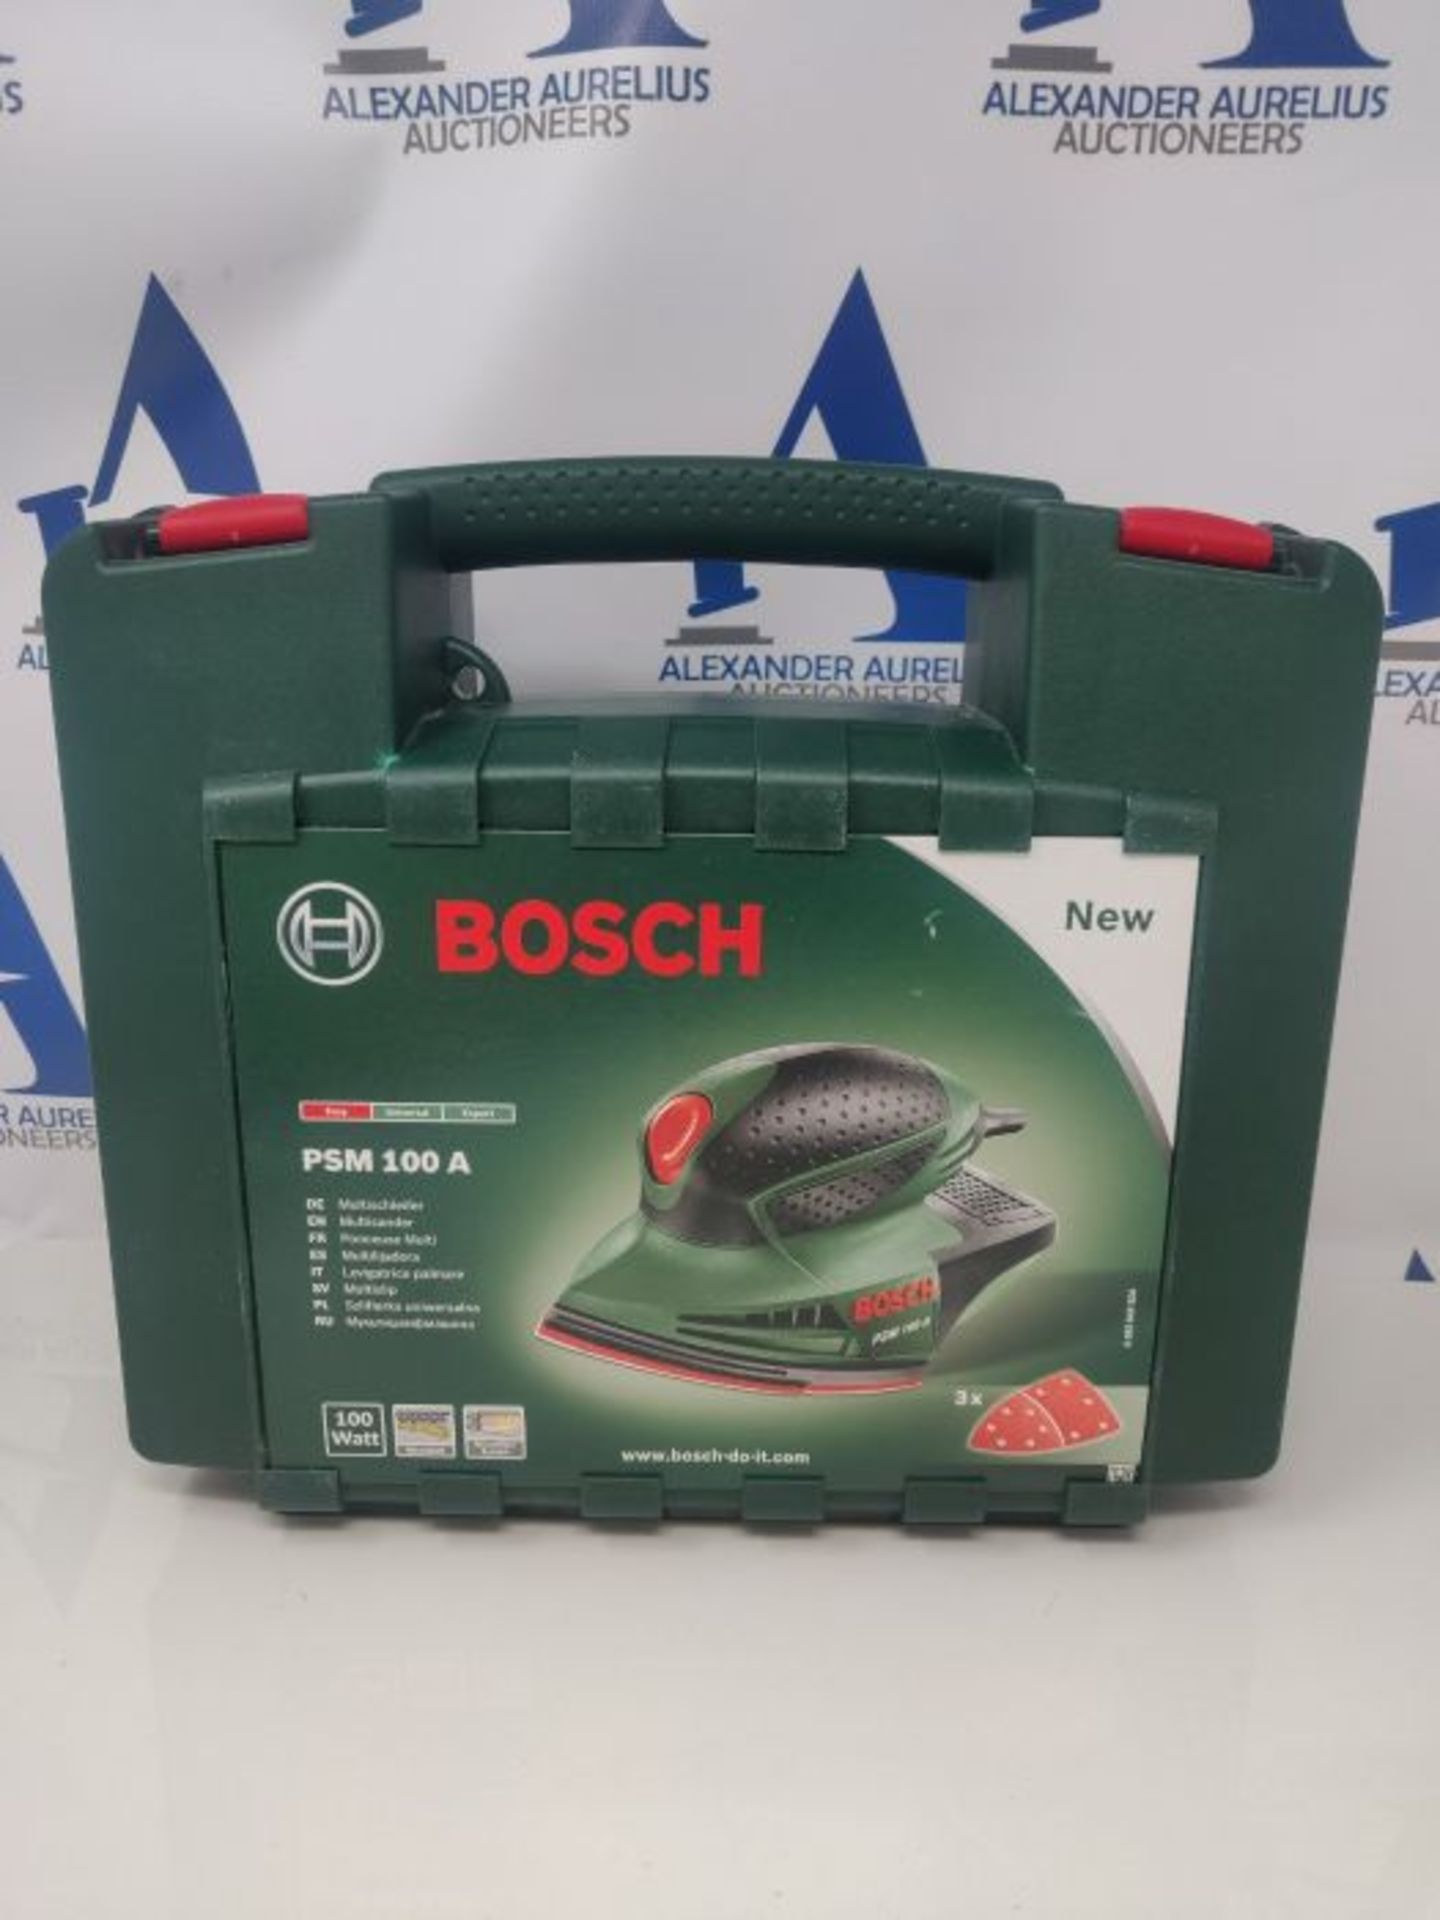 Bosch Multischleifer PSM 100 A (100 Watt, im Koffer) - Image 2 of 3